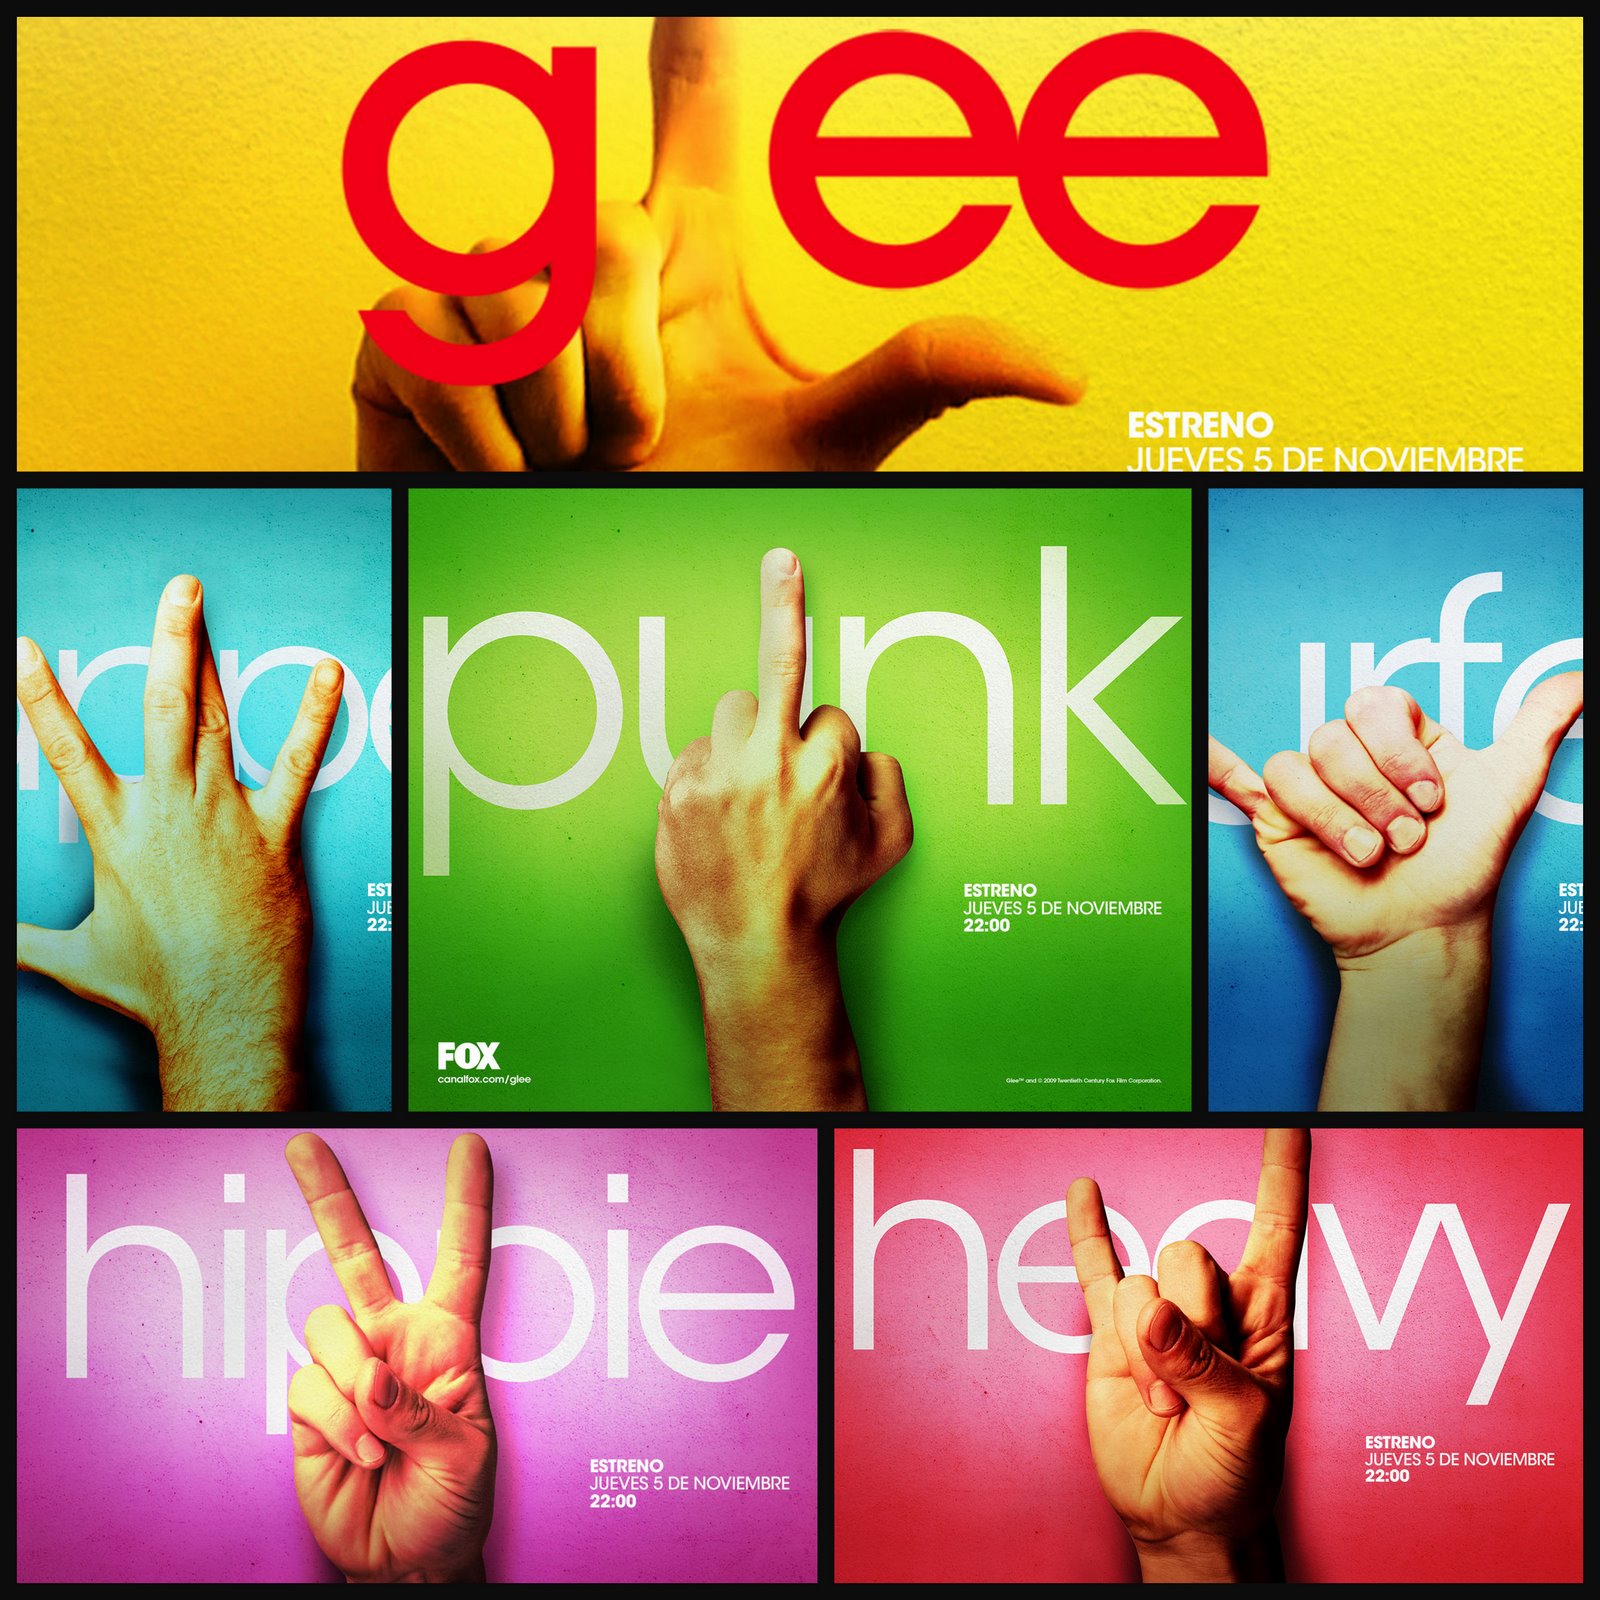  - Glee4LIFE!